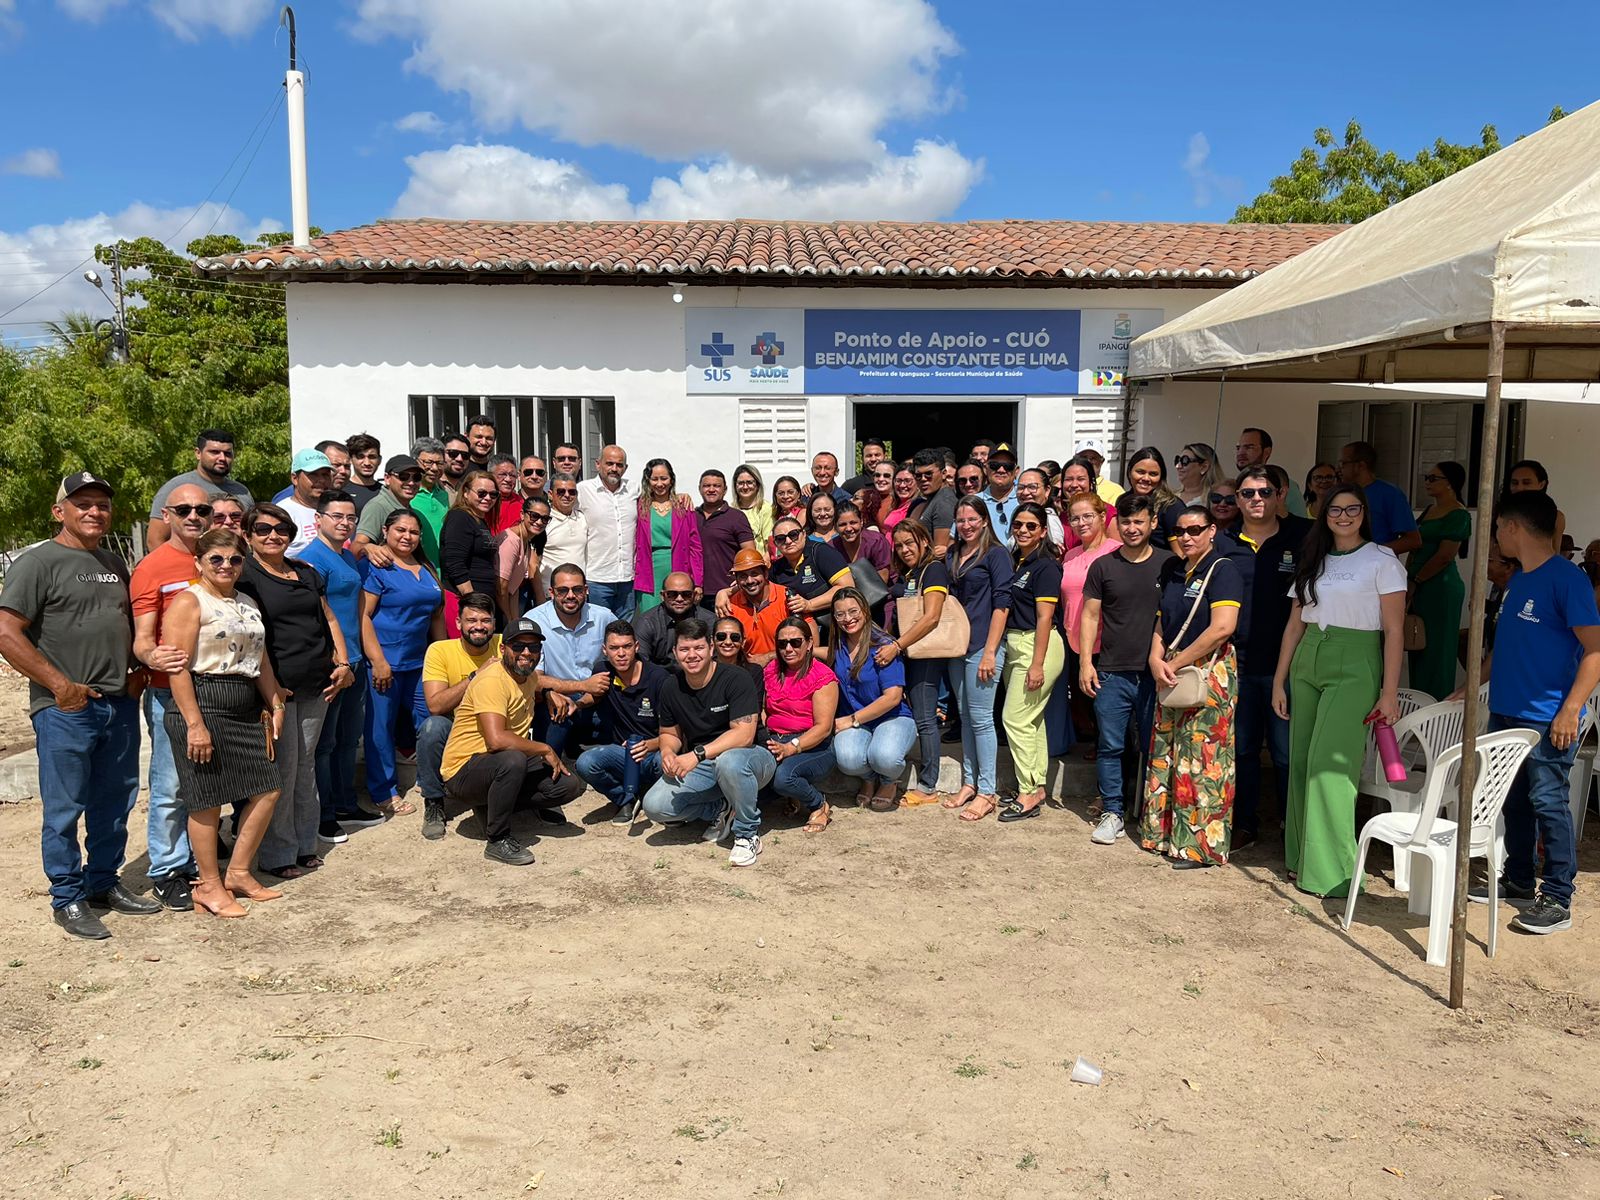 Prefeitura de Ipanguaçu reinaugura Ponto de Apoio no Cuó